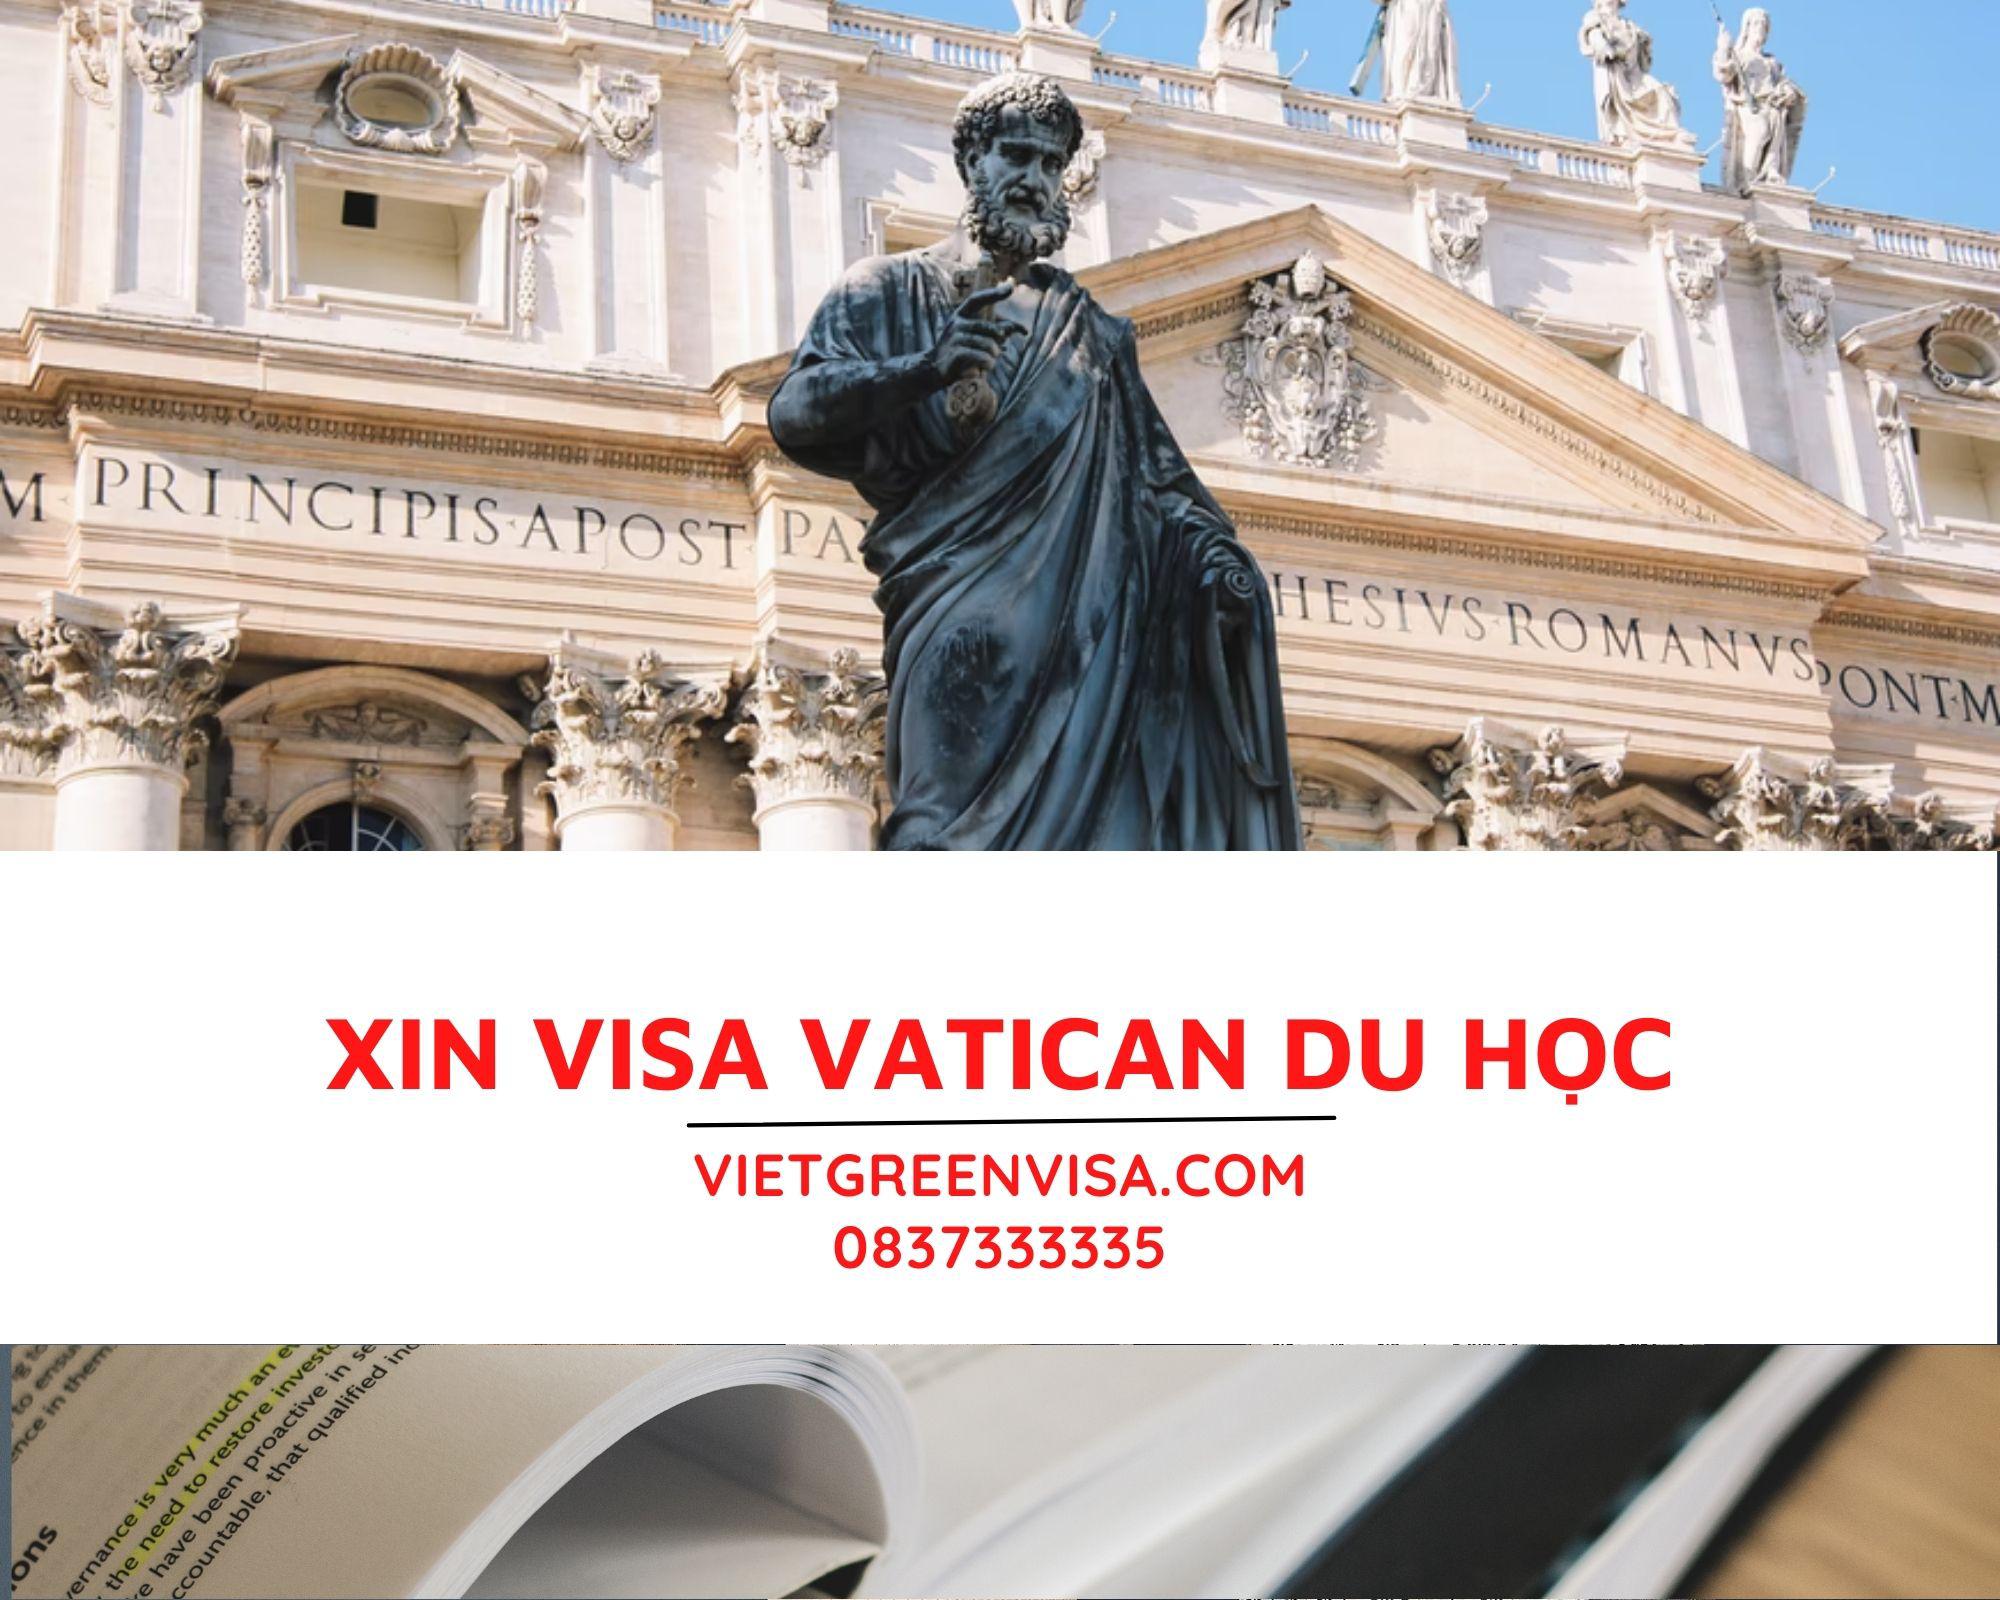 Dịch vụ hỗ trợ visa du học Vatican trọn gói